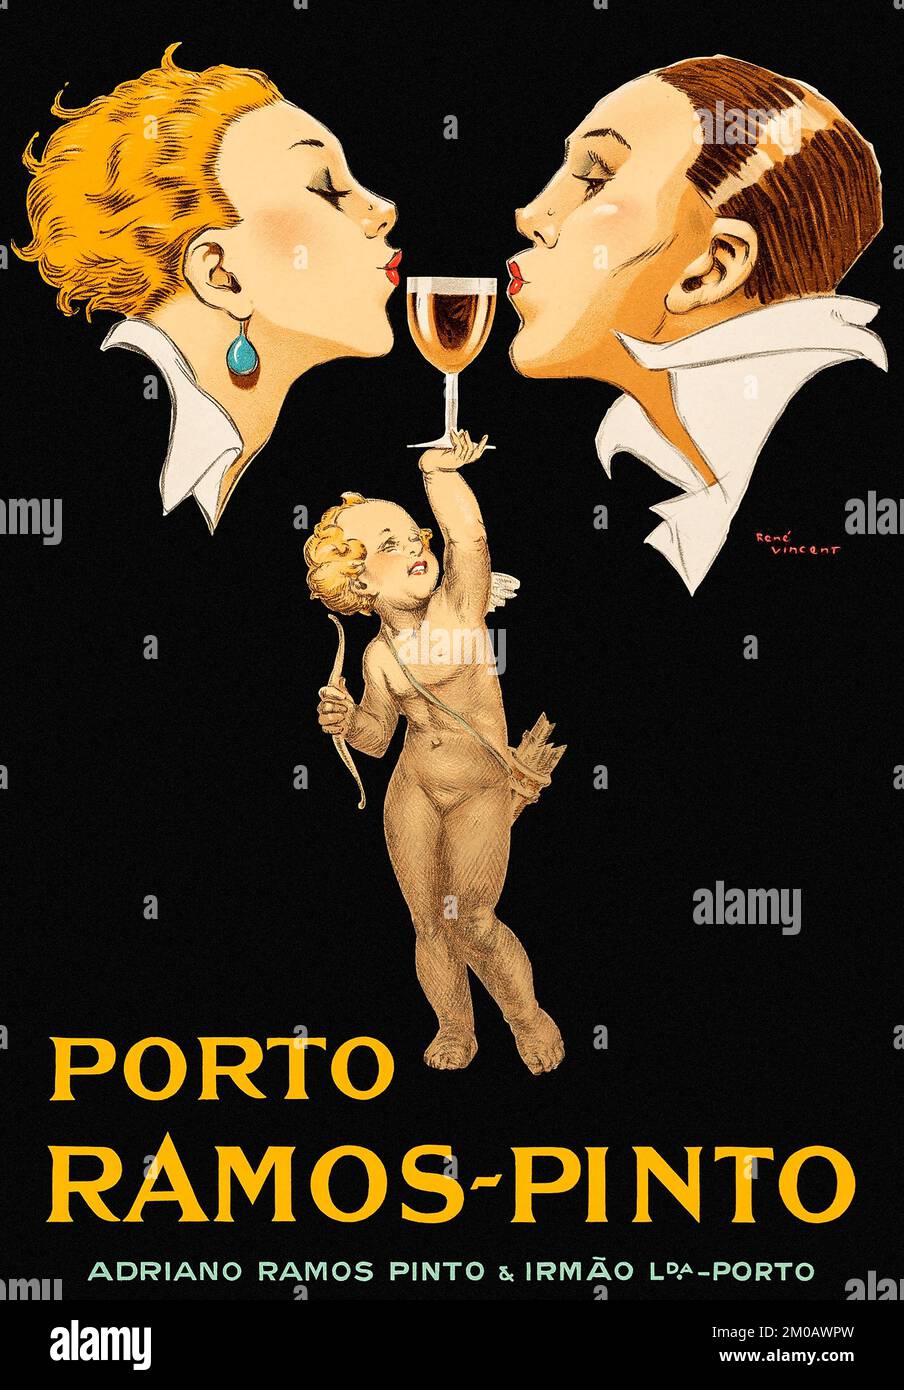 Publicité sur l'alcool - Porto Ramos-Pinto (1920). Affiche publicitaire française Banque D'Images